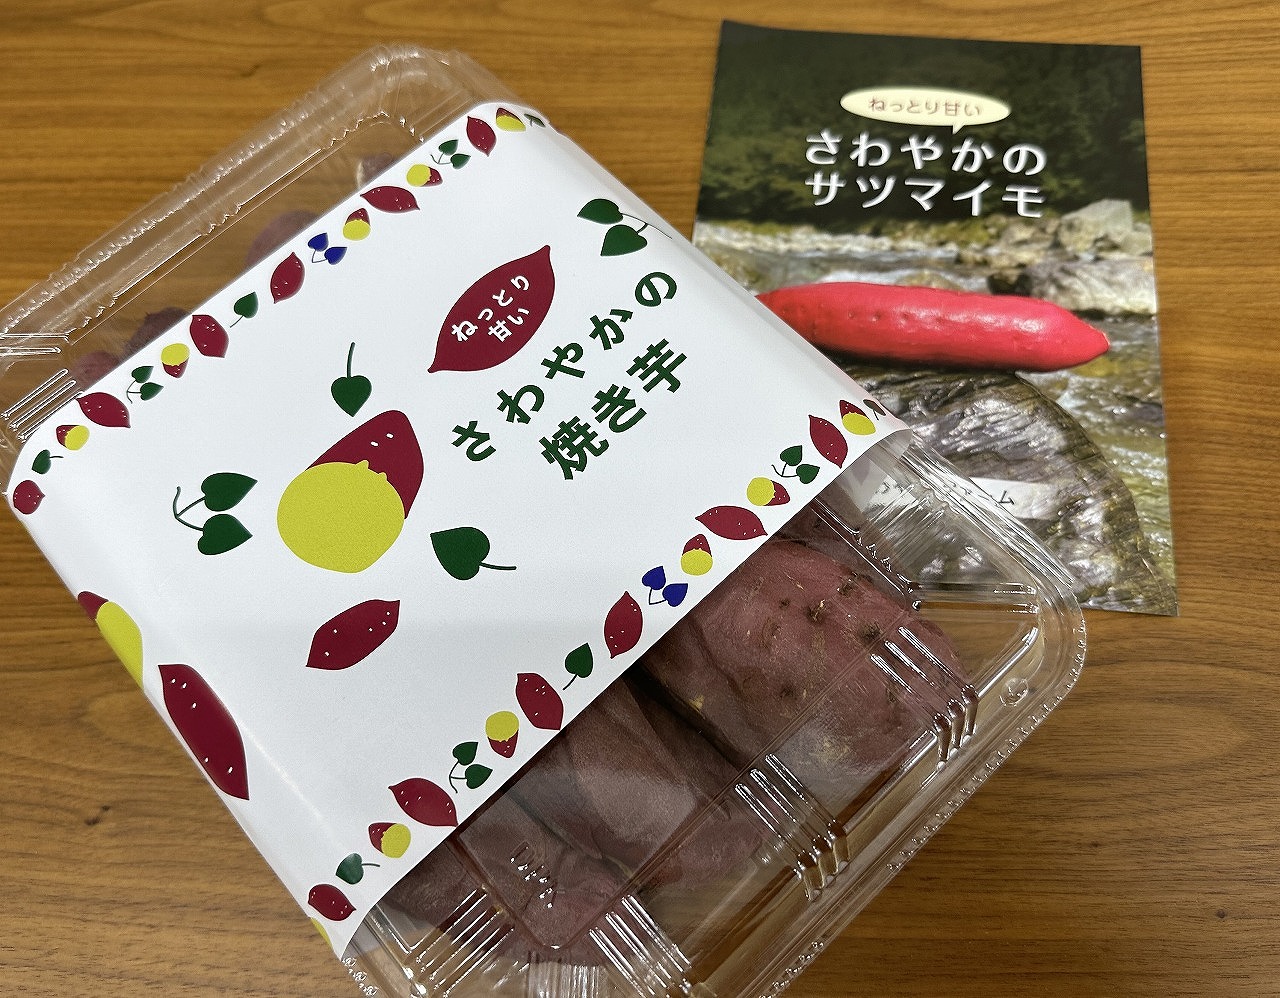 さわやかの サツマイモ 神戸市東灘店